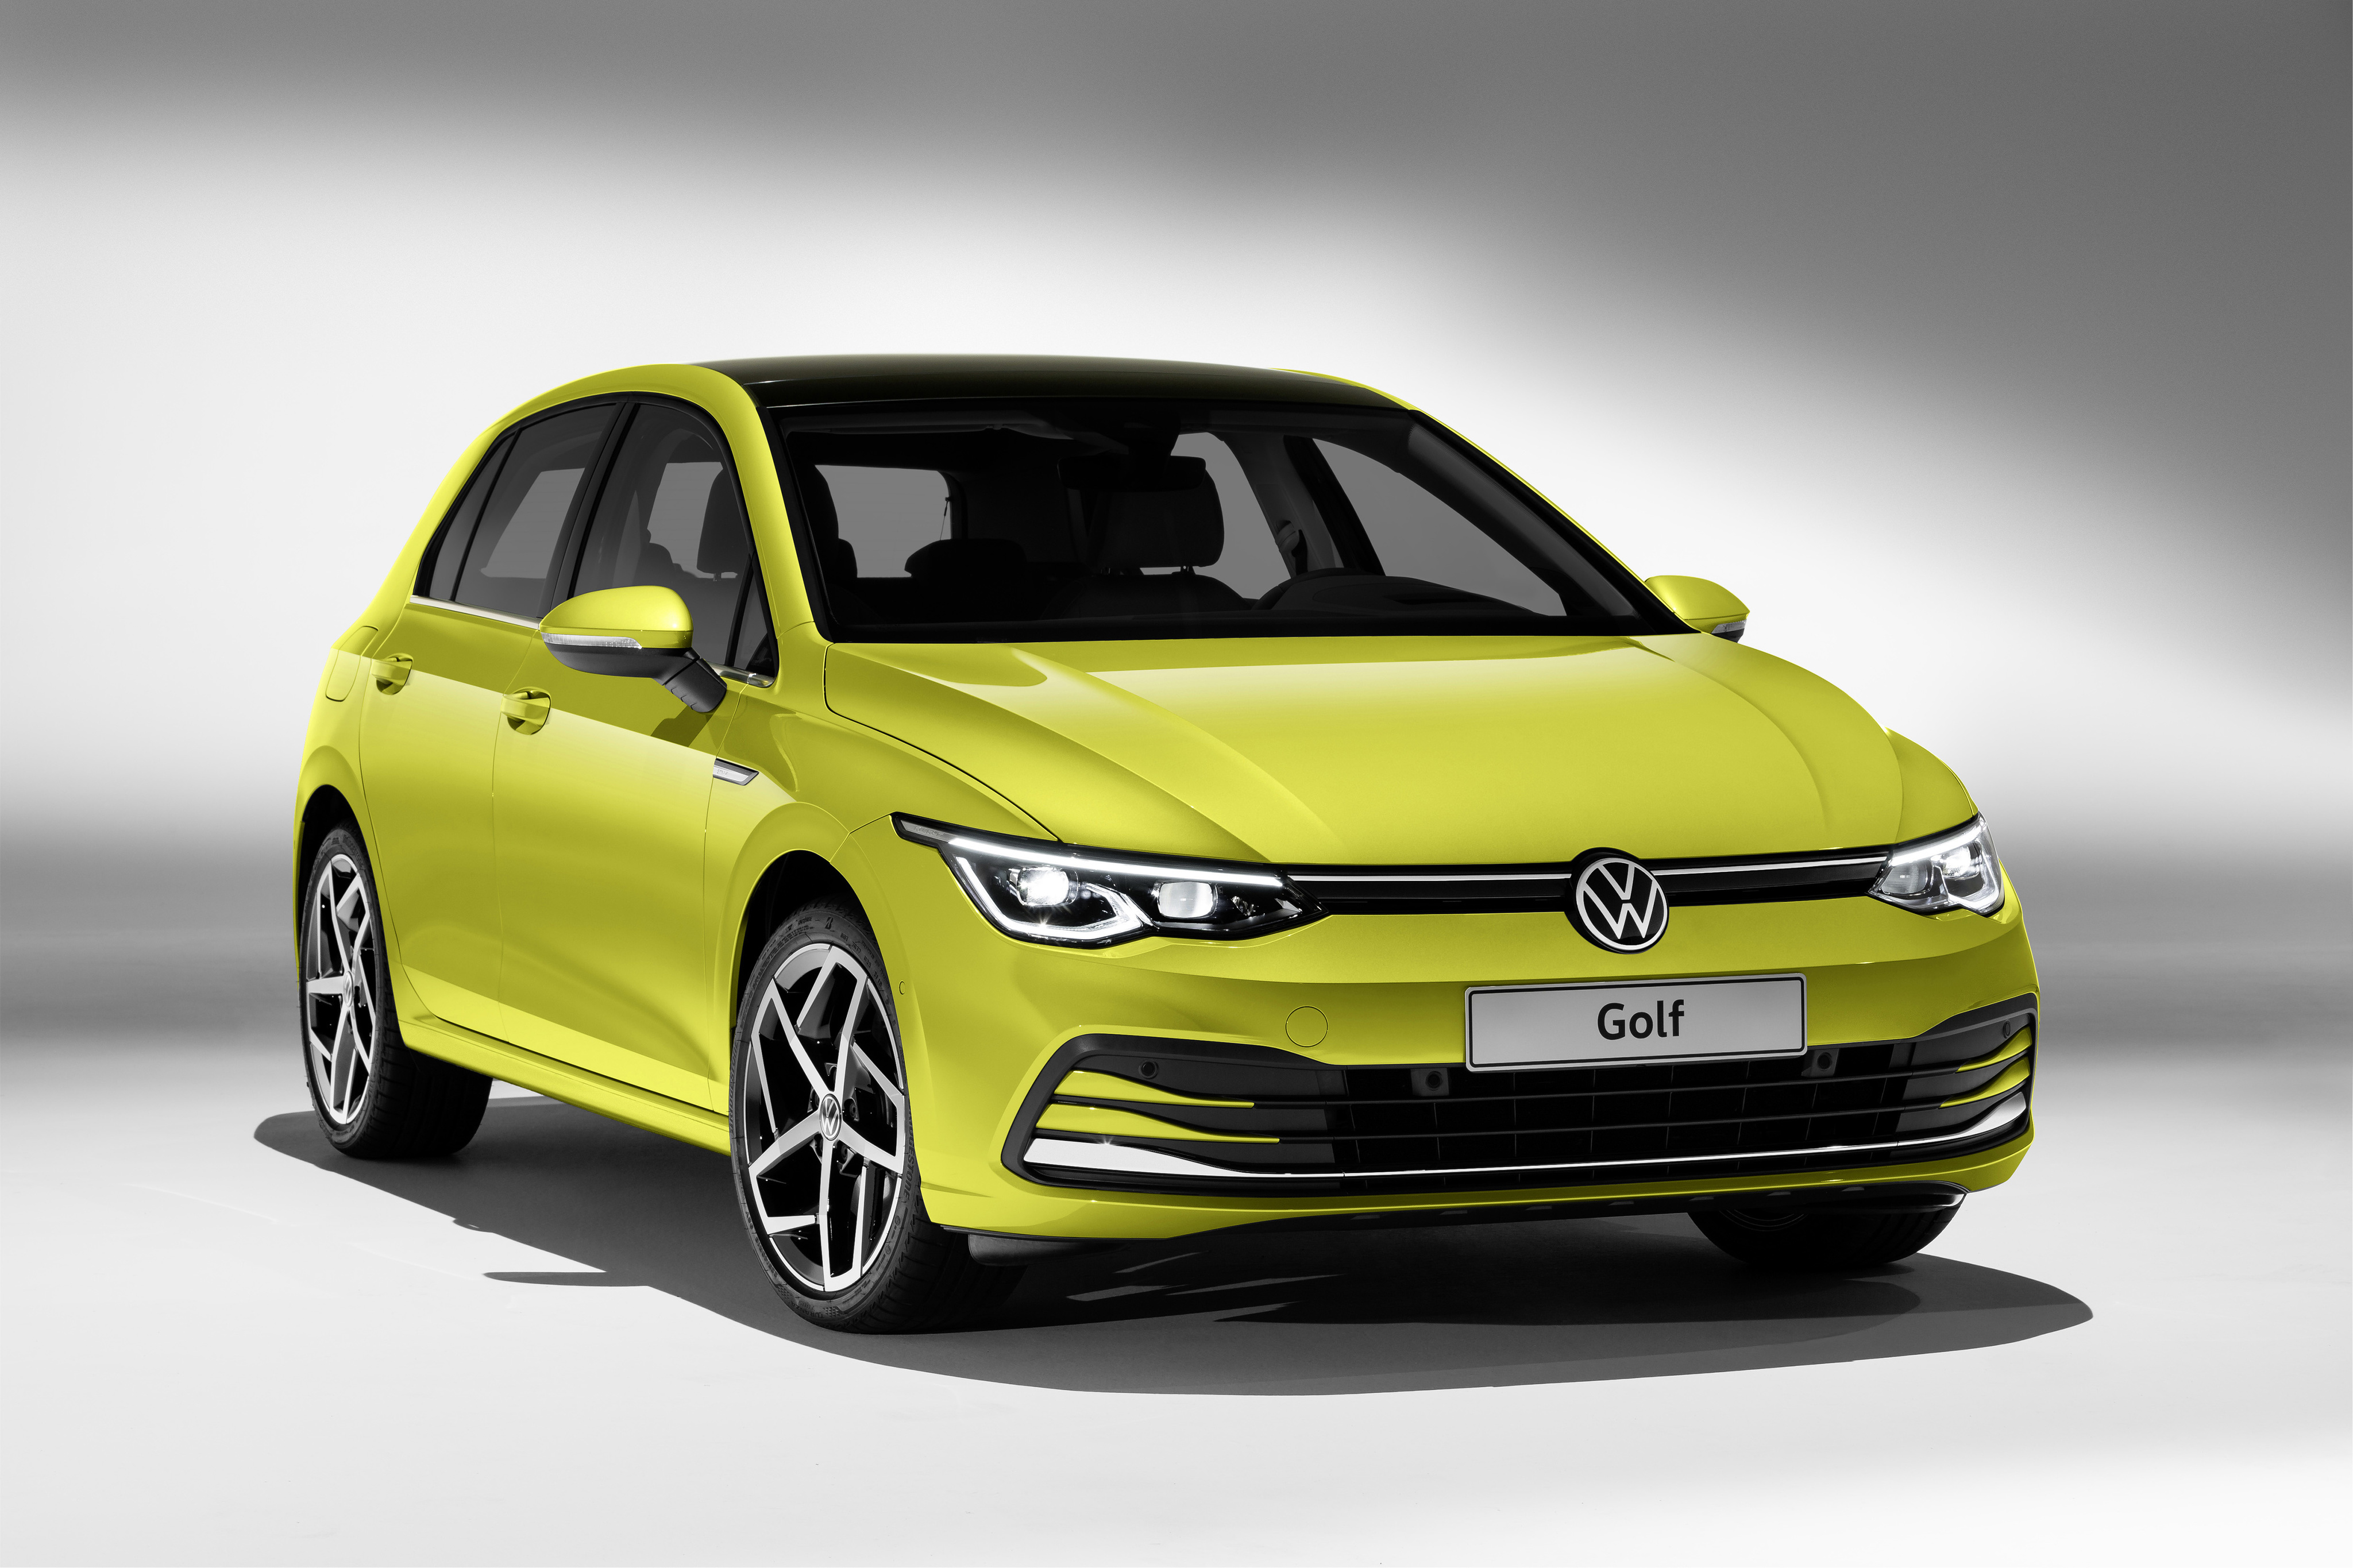 Free download wallpaper Volkswagen, Car, Volkswagen Golf, Compact Car, Vehicles, Yellow Car on your PC desktop